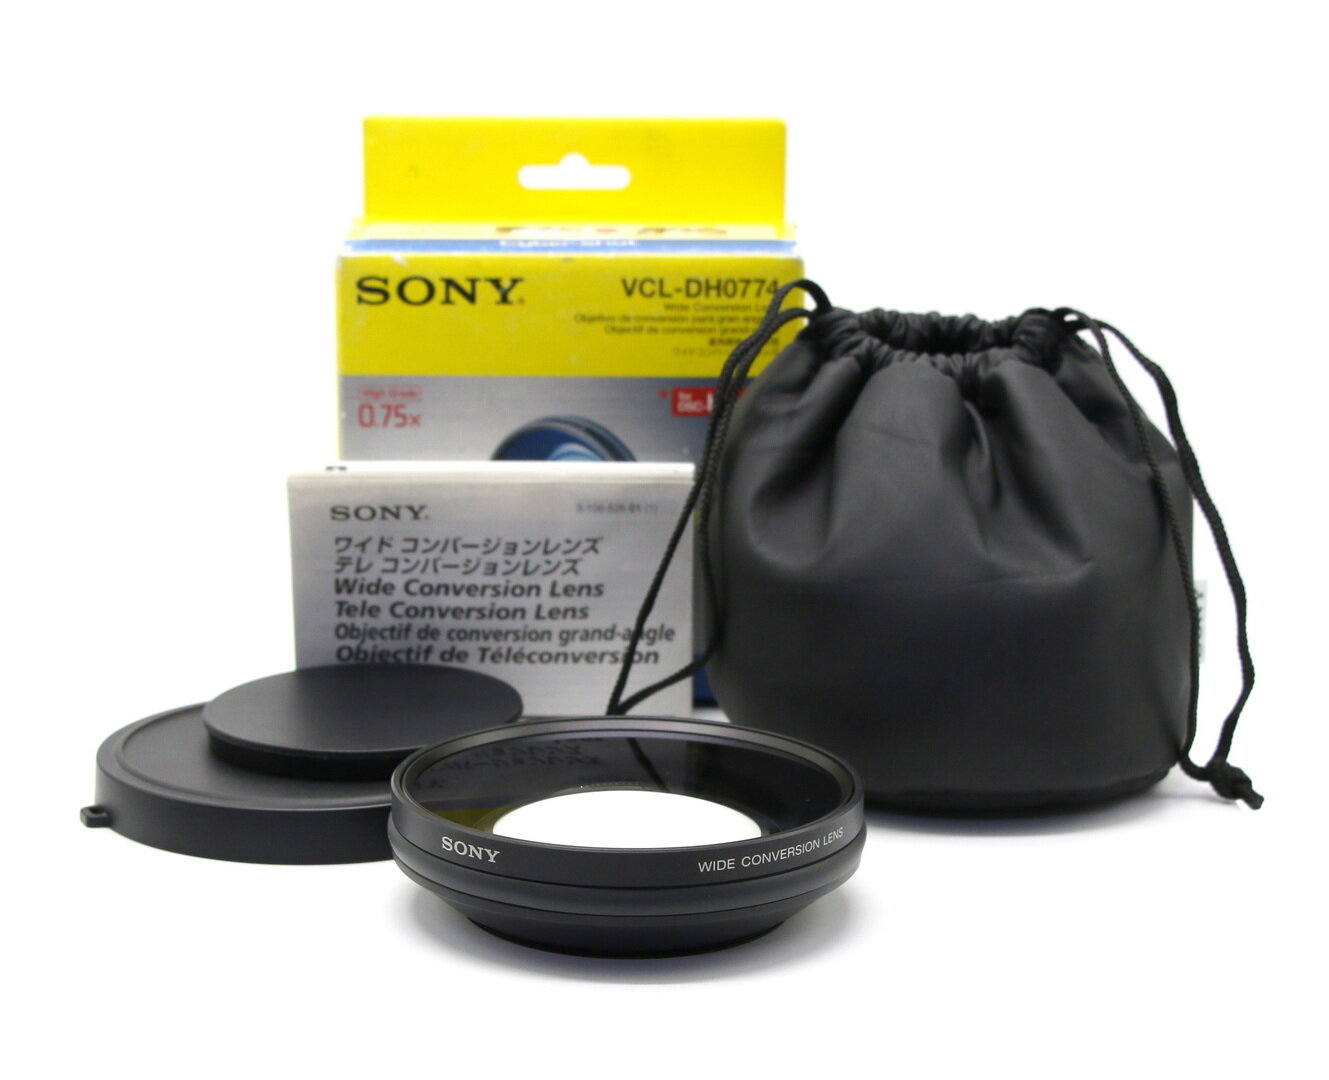 Конвертер Sony VCL-DH0774 Wide Conversion Lens x0.75 в упаковке